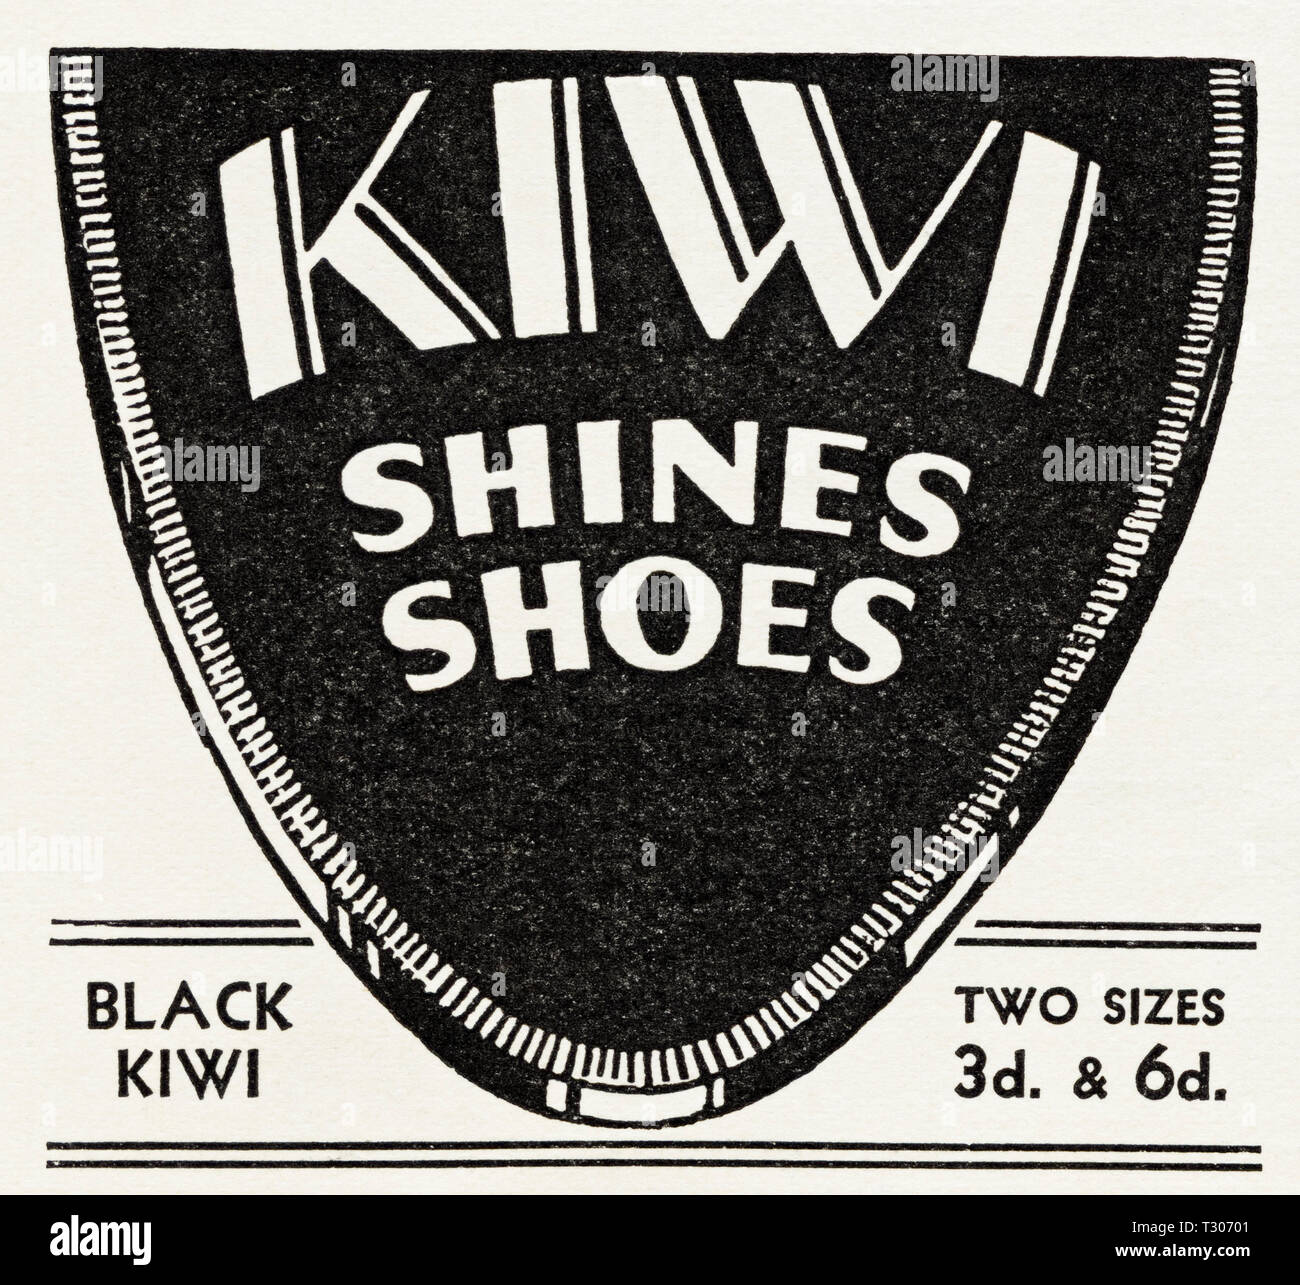 Originale degli anni trenta vintage vecchio annuncio stampa da 30s rivista inglese pubblicità Kiwi black shoe polish circa 1932 Foto Stock